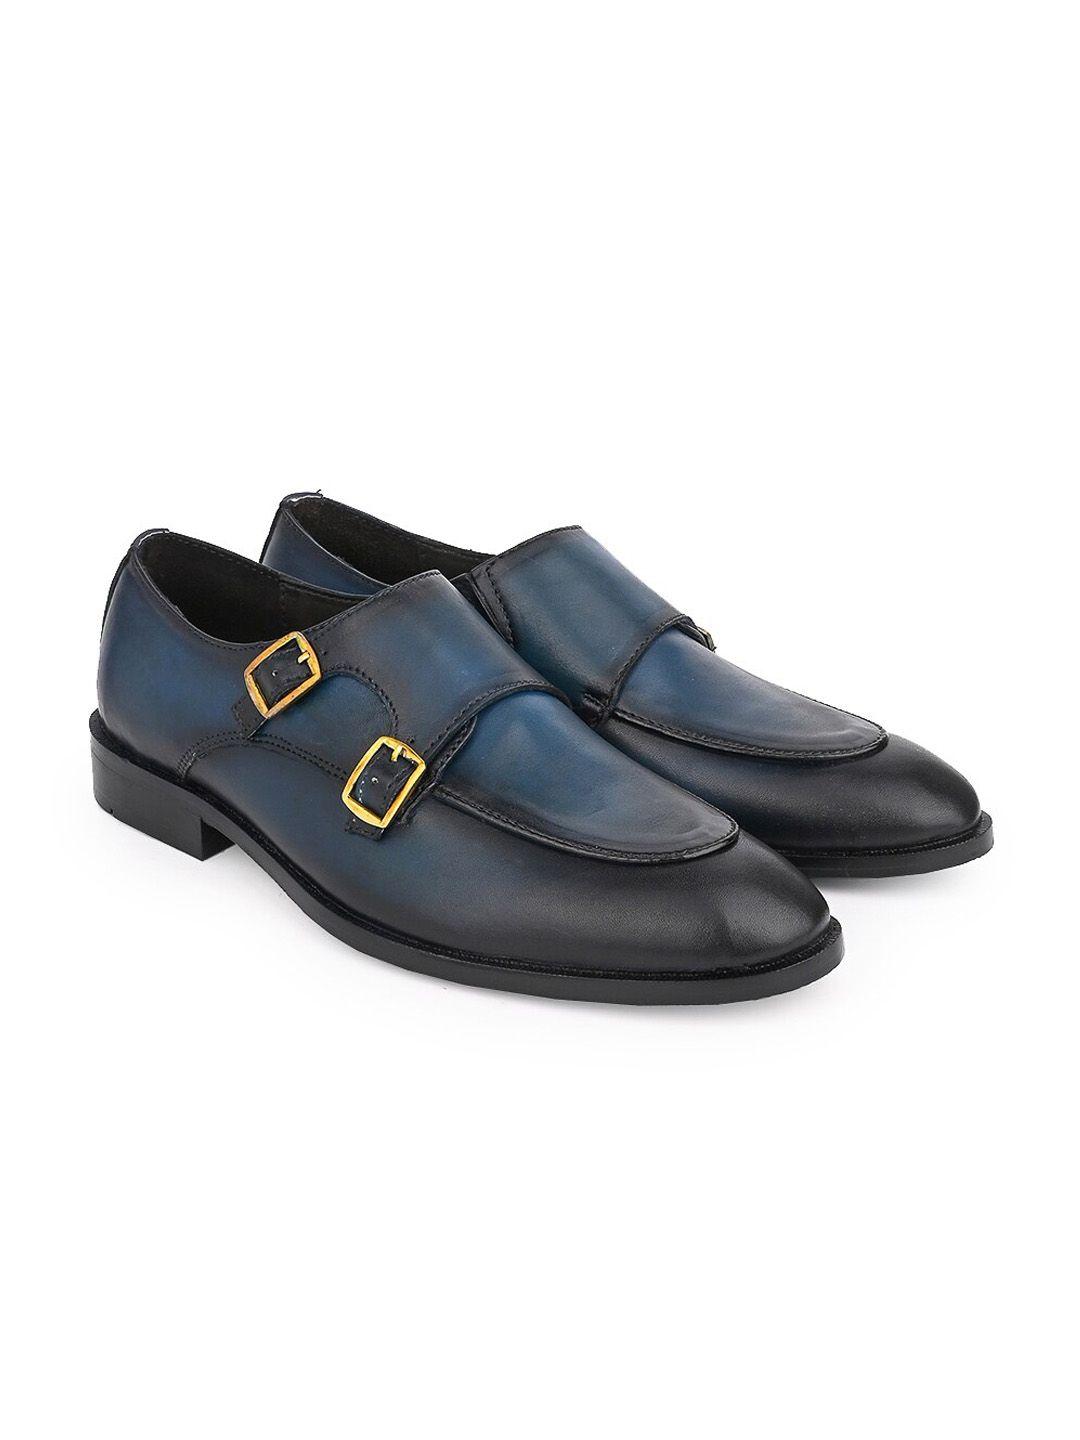 la-botte-men-leather-formal-monk-shoes